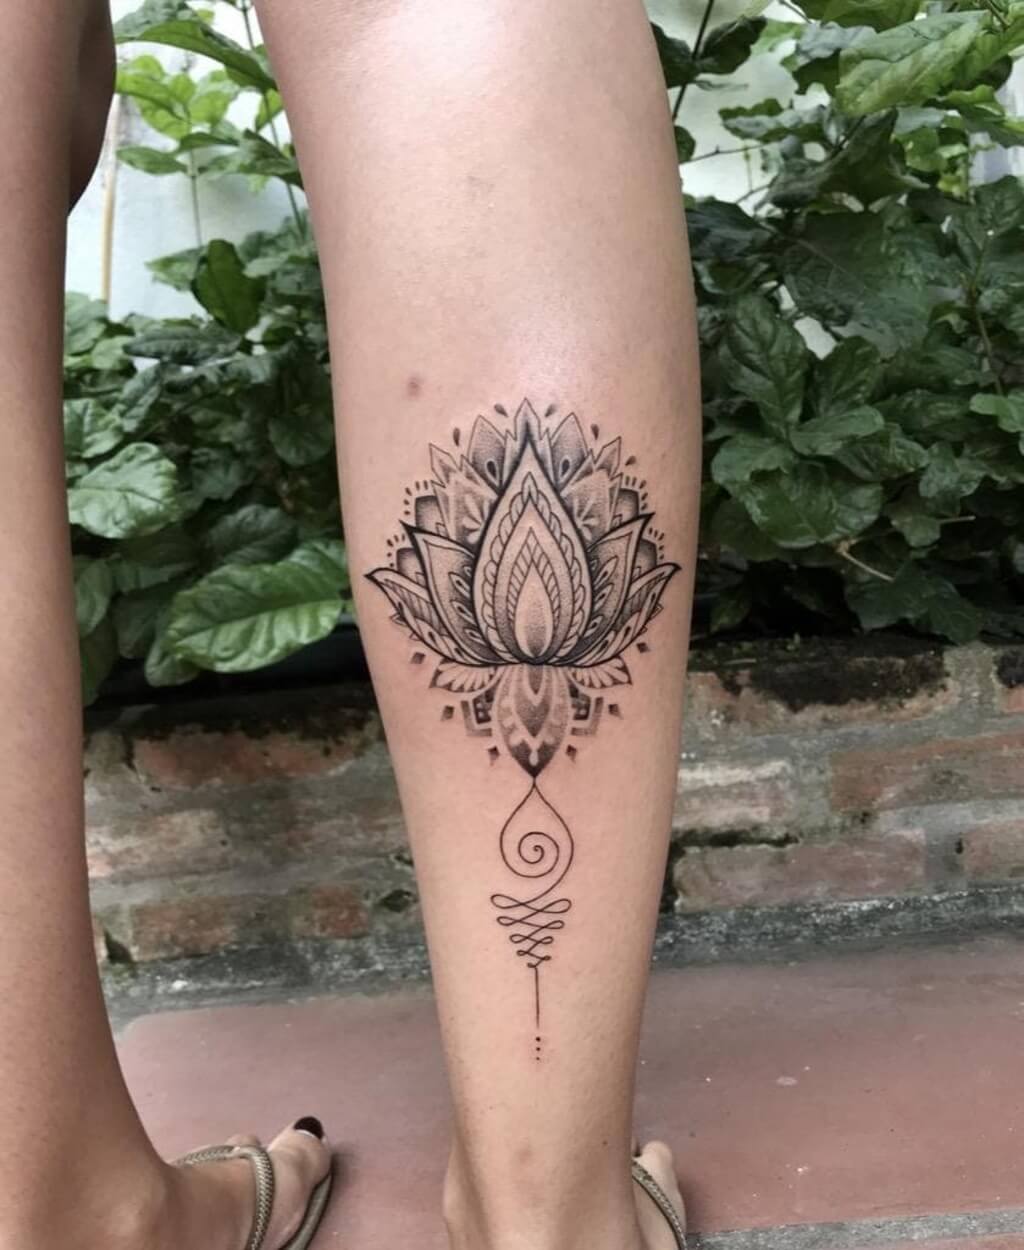 Mandala Lotus Flower Tattoo